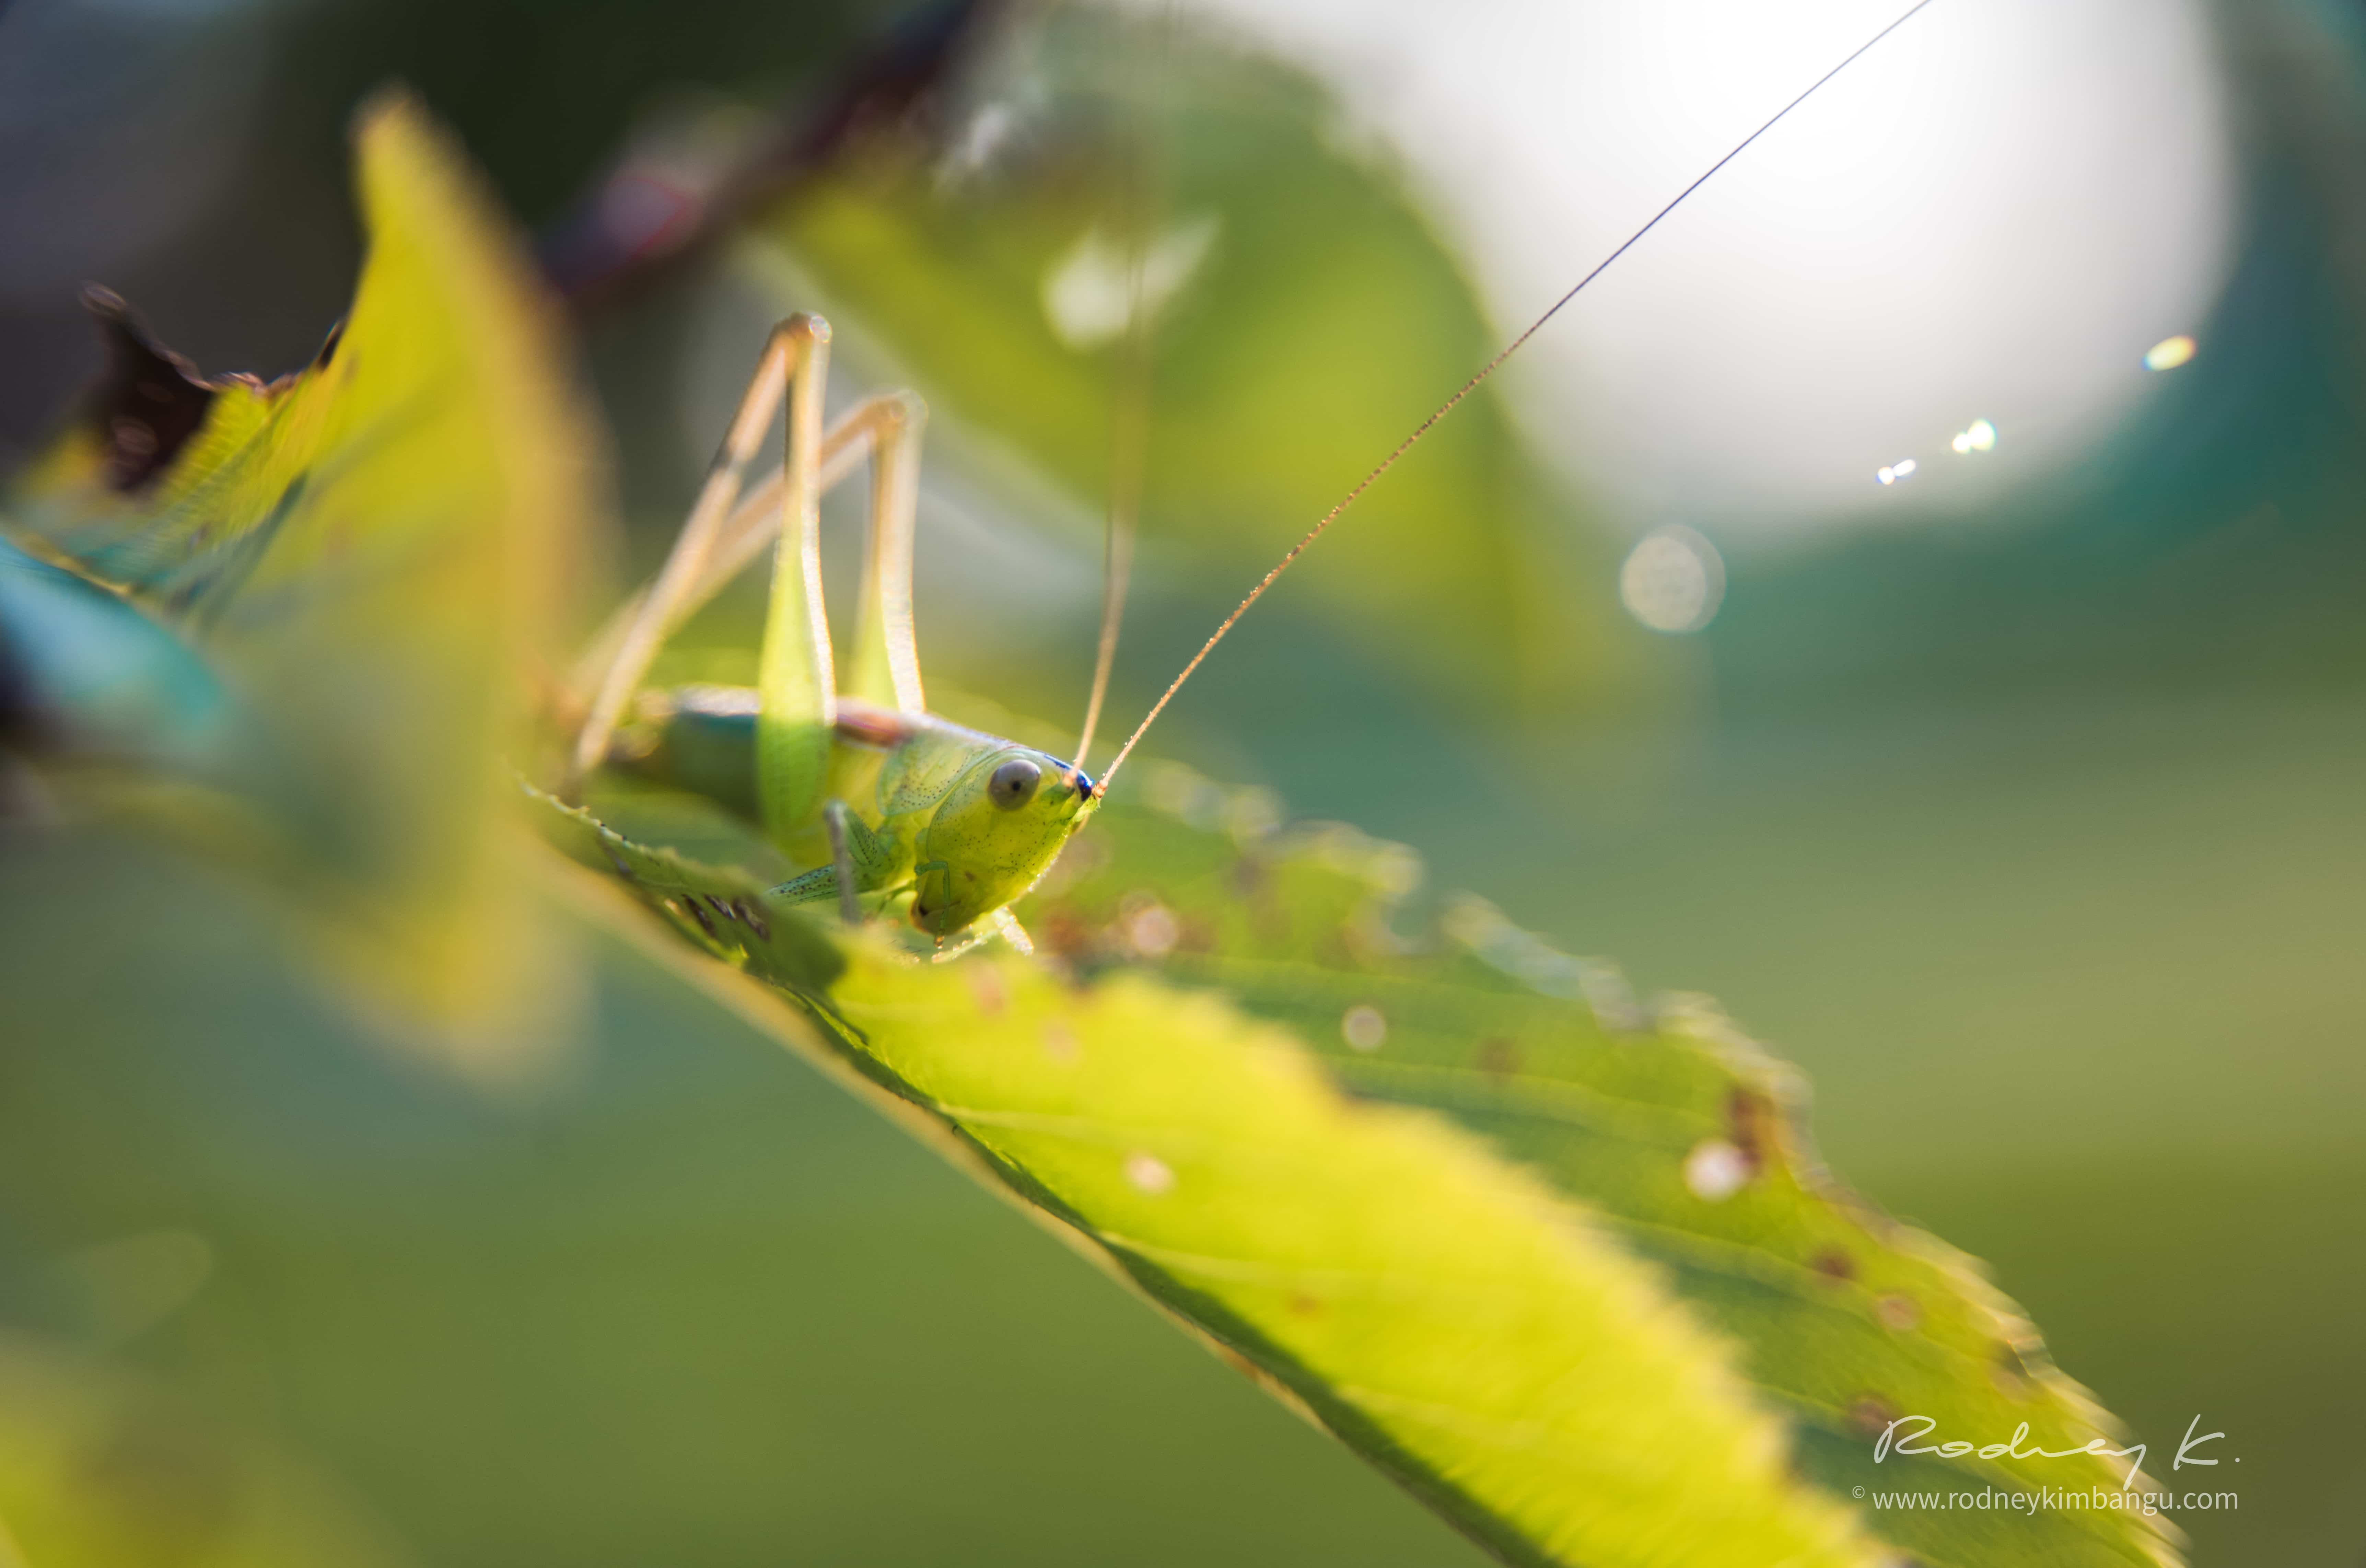 grasshopper_rodney_Kimbangu